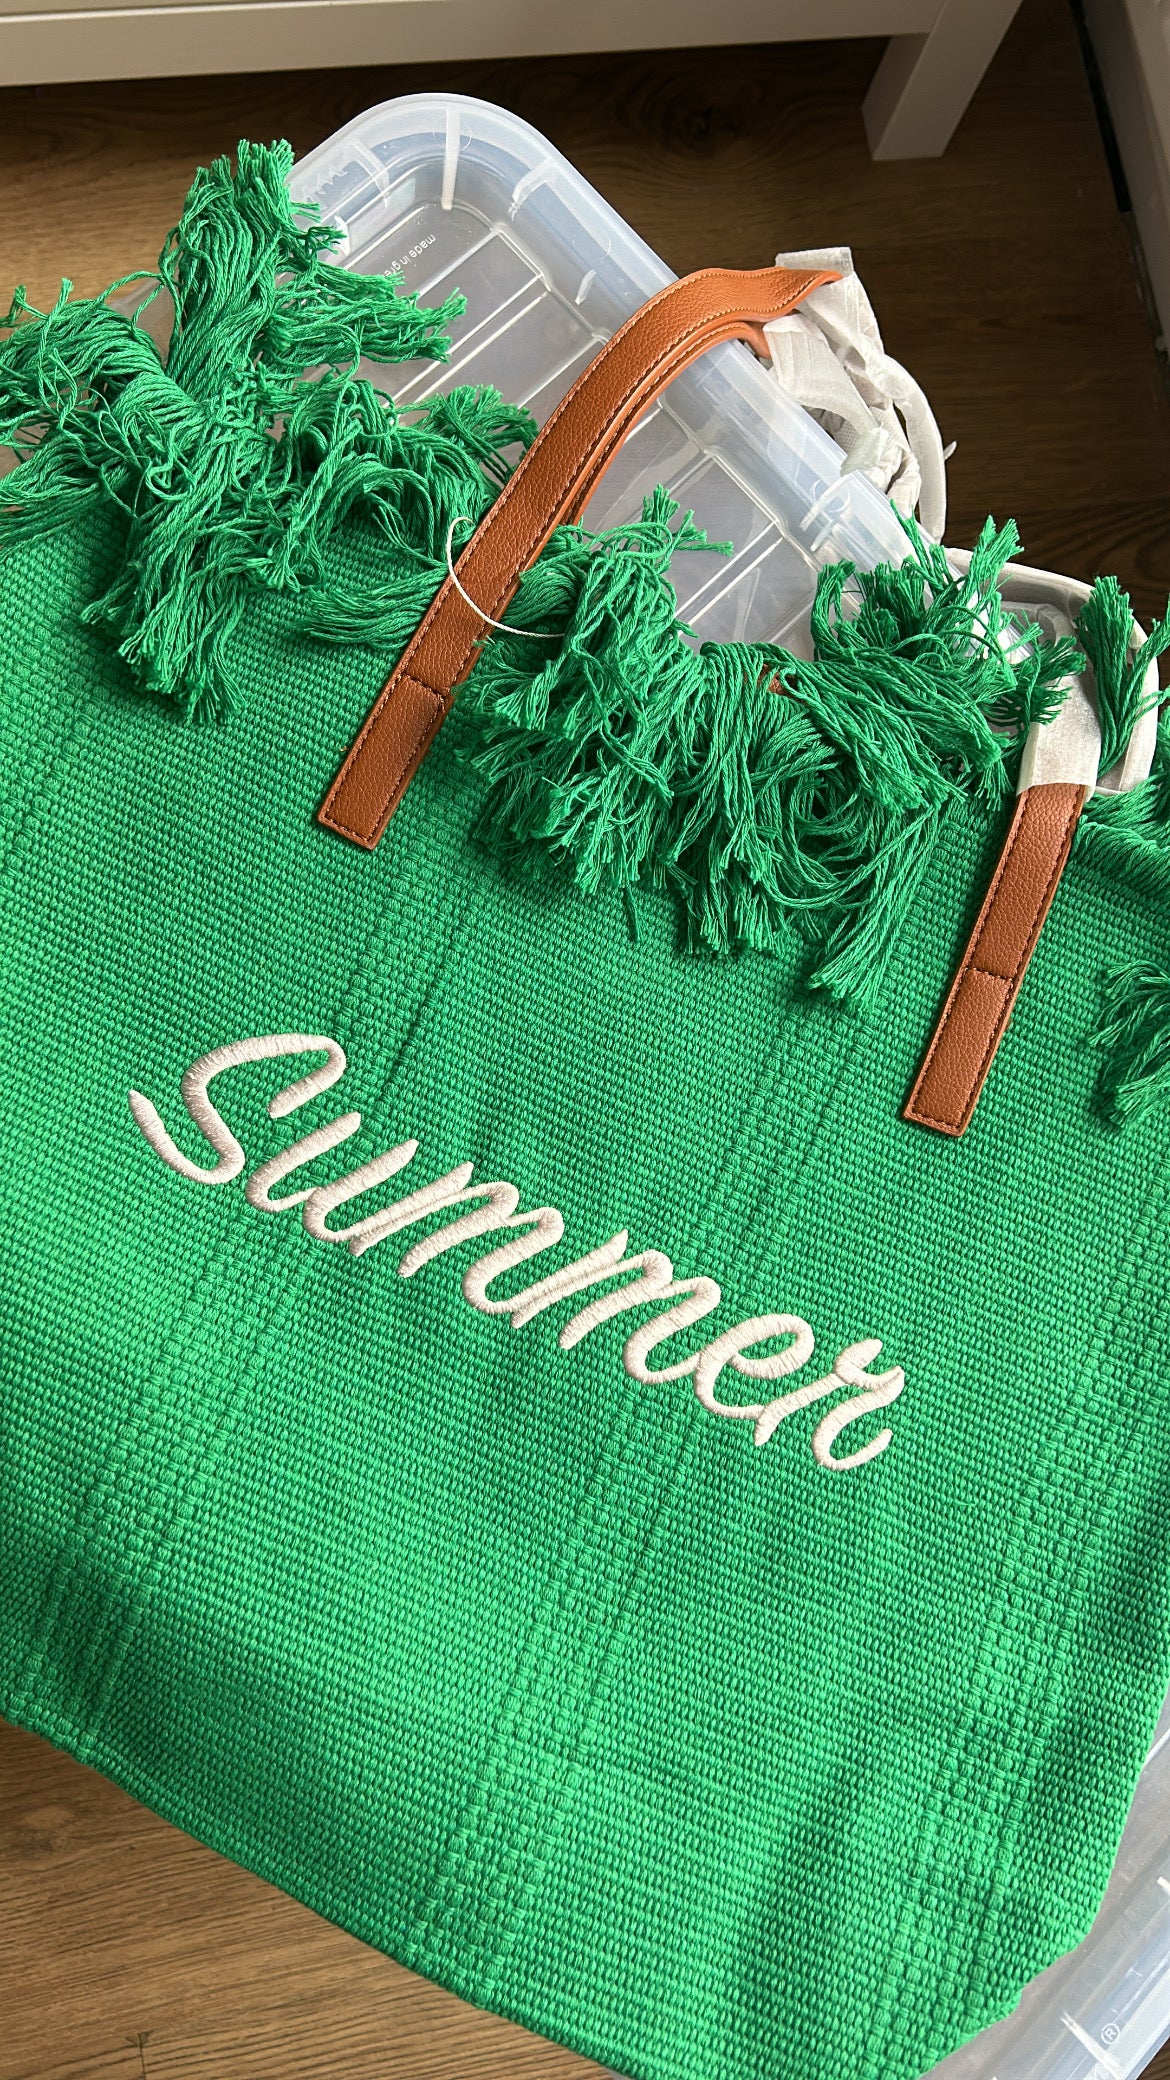 Summer Beach Bag - Green